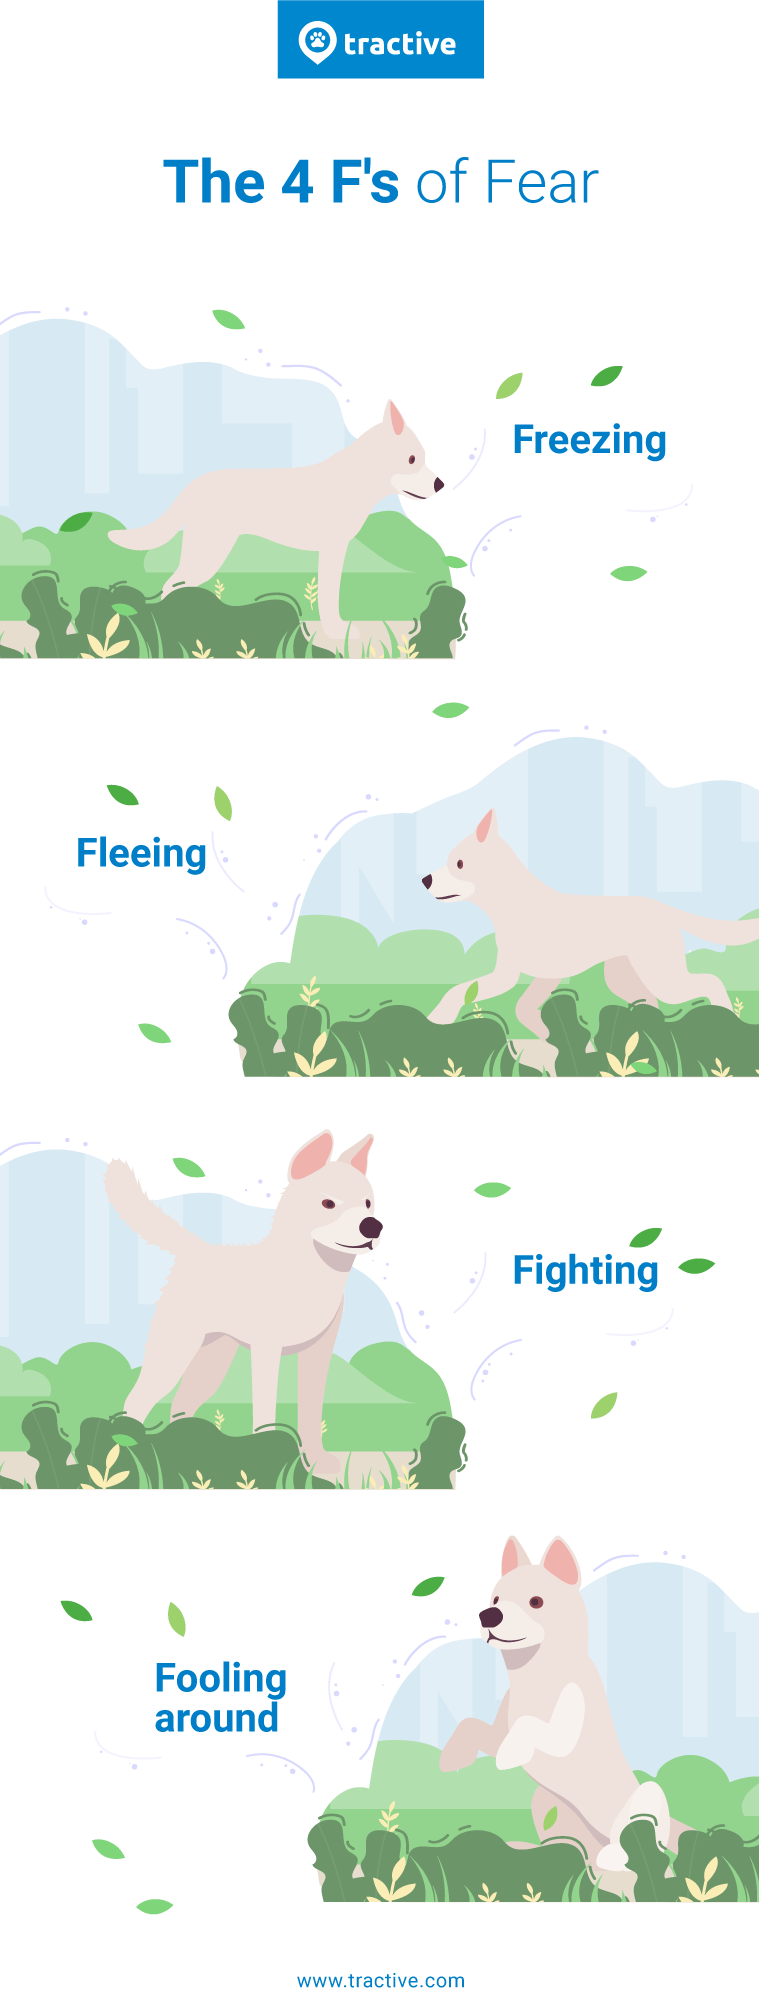 Afbeelding van de 4 F’s van Fear (angst) bij honden